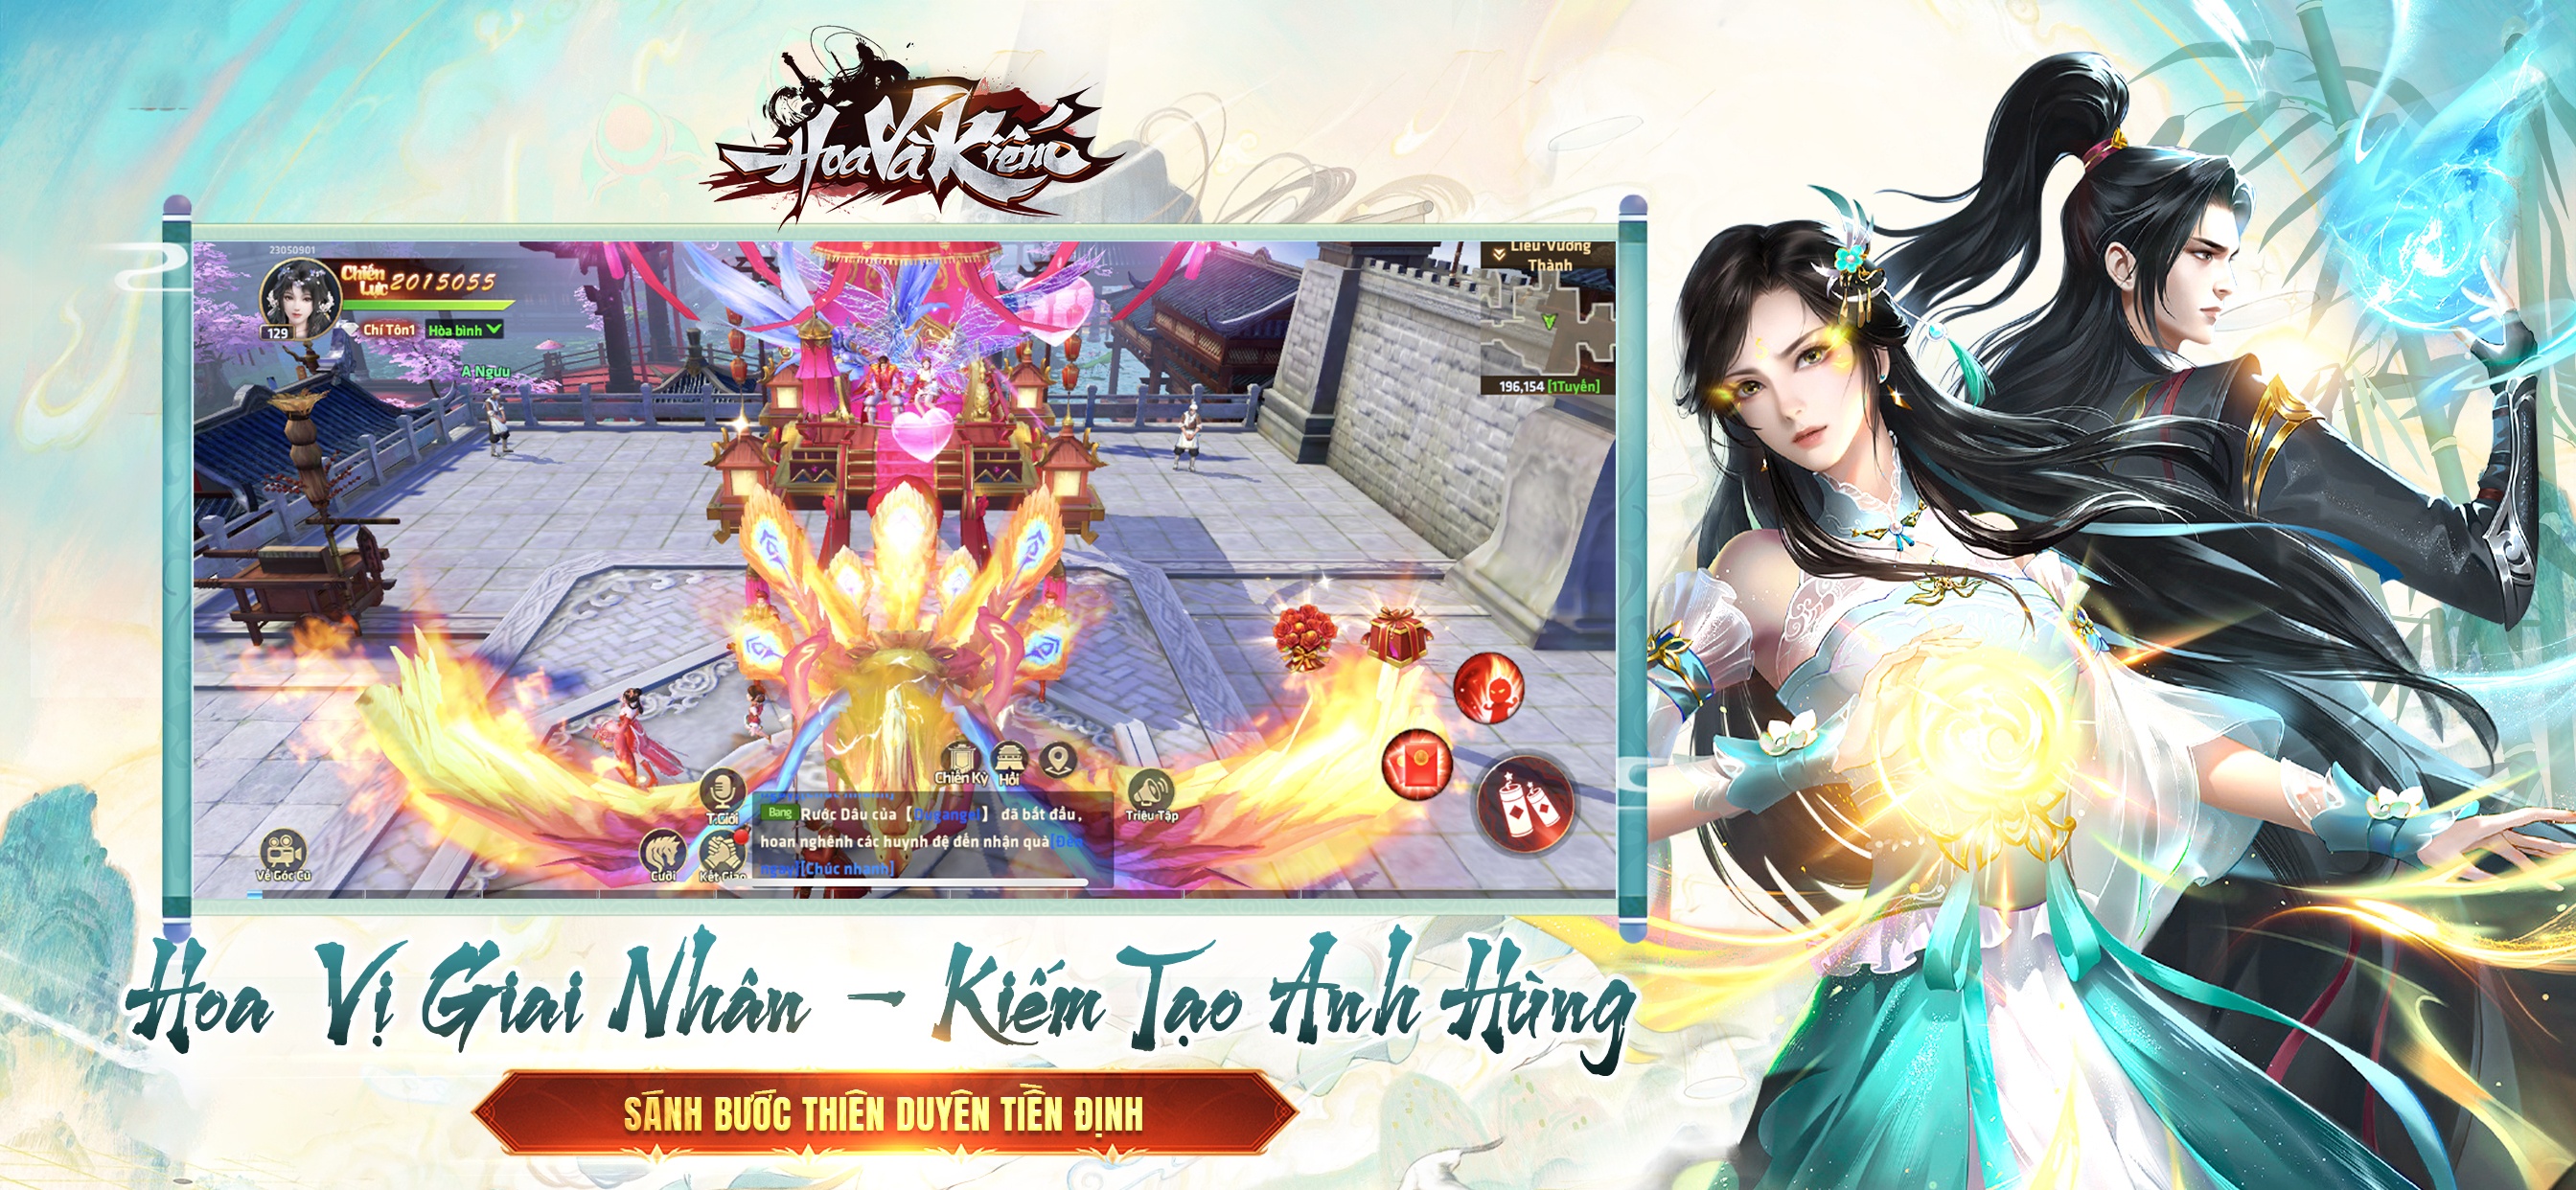 SohaGame giới thiệu tựa game nhập vai mới mang tên Hoa và Kiếm